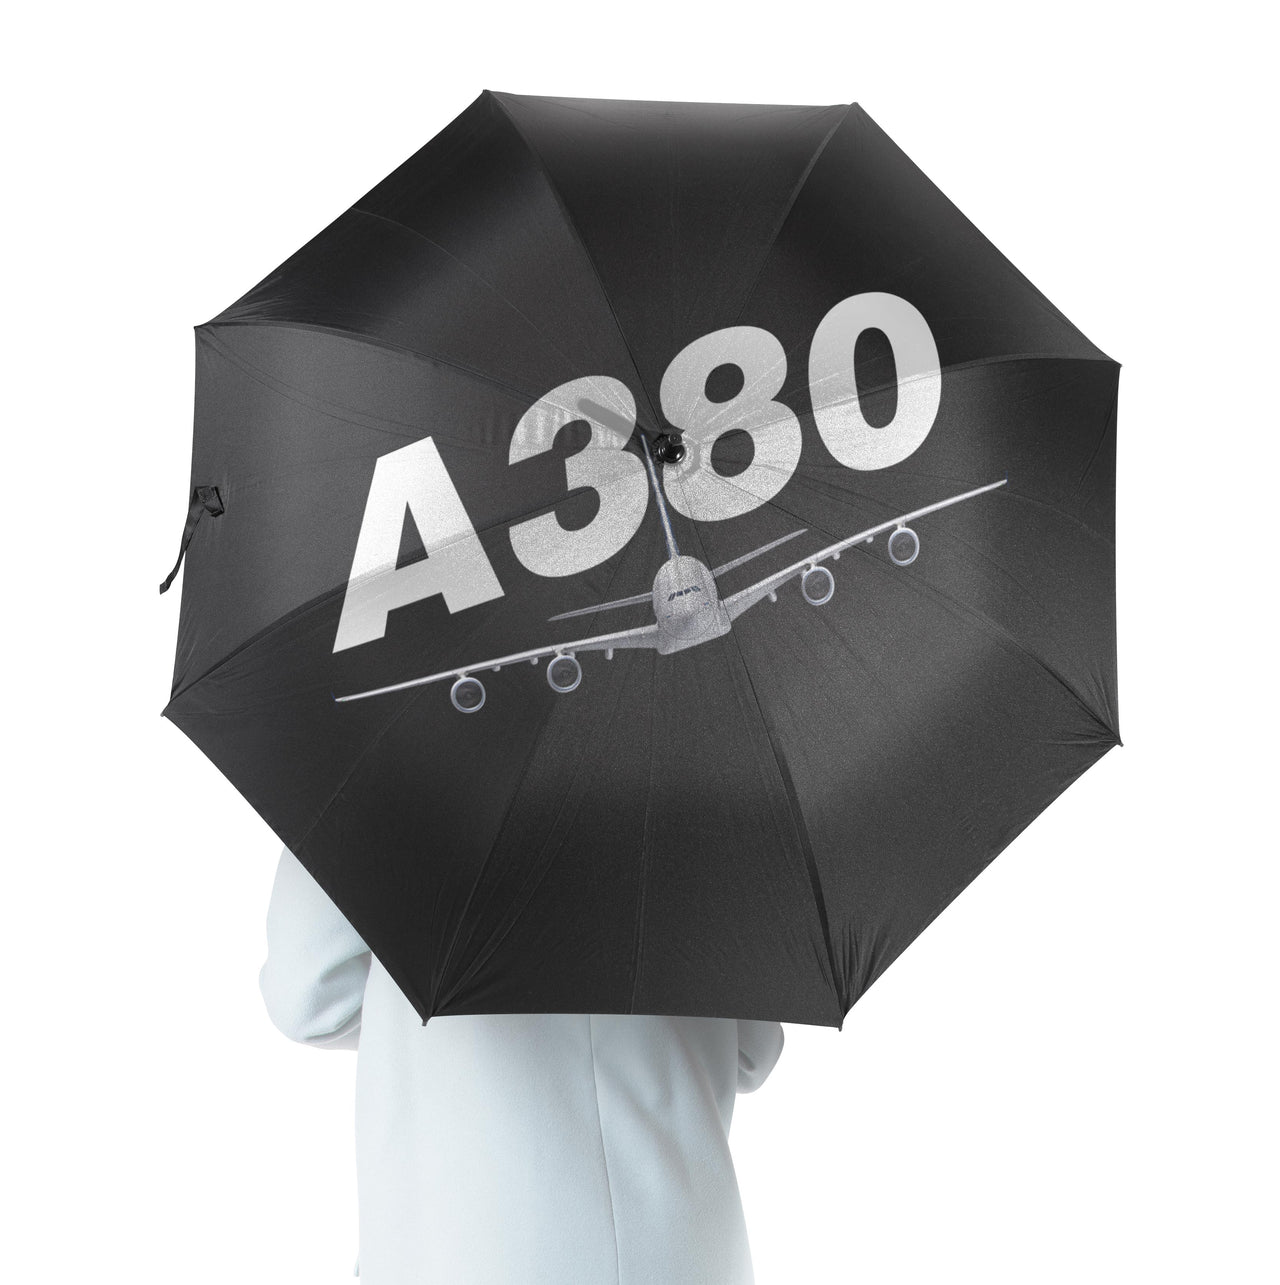 Super Airbus A380 Designed Umbrella